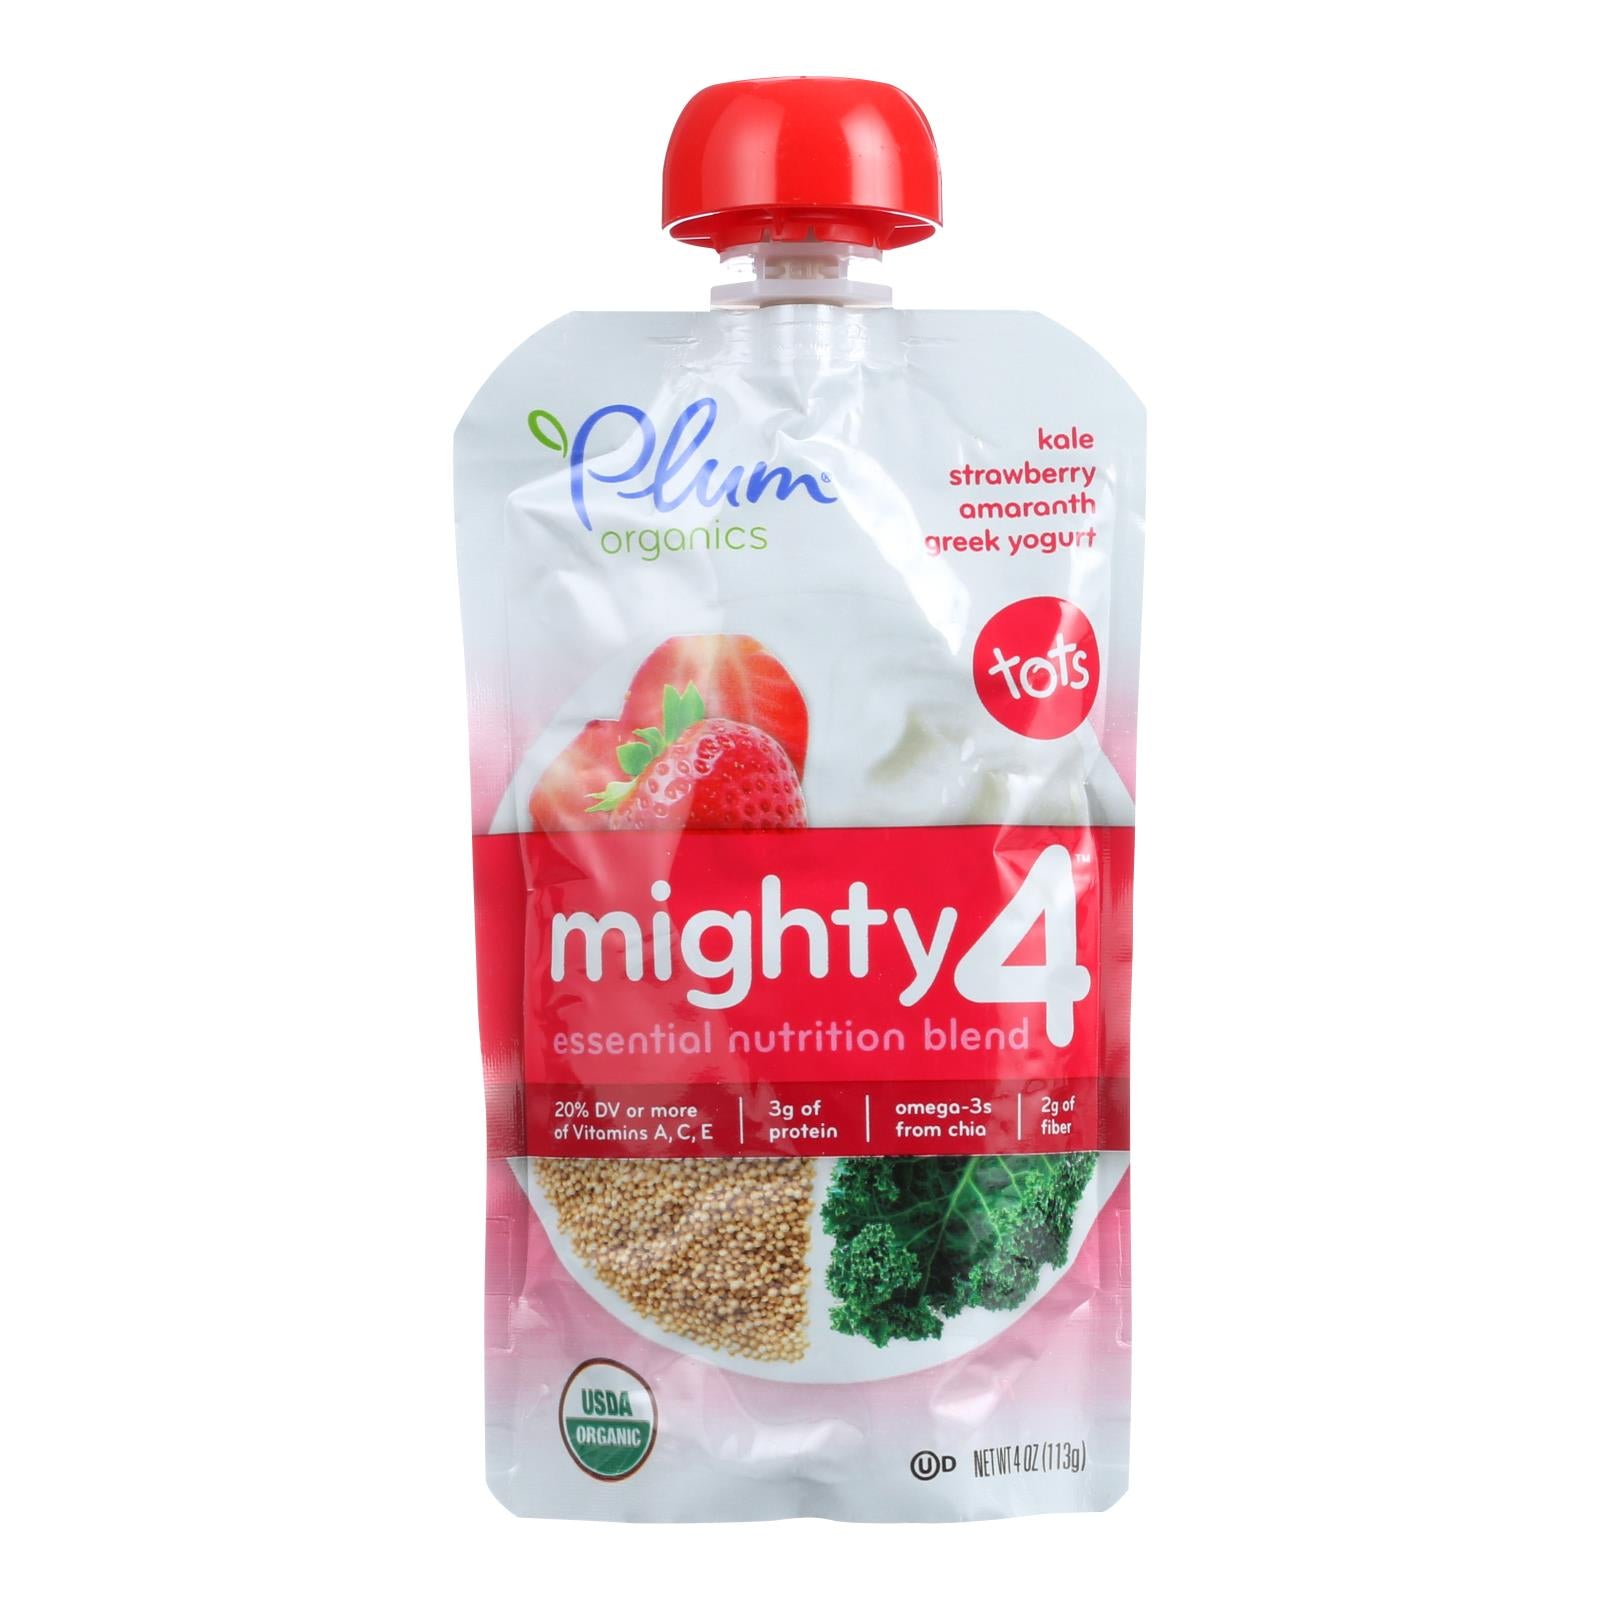 Plum Organics Essential Nutrition Blend - Mighty 4 - Kale Strawberry Amaranth Greek Yogurt - 4 oz - Case of 6